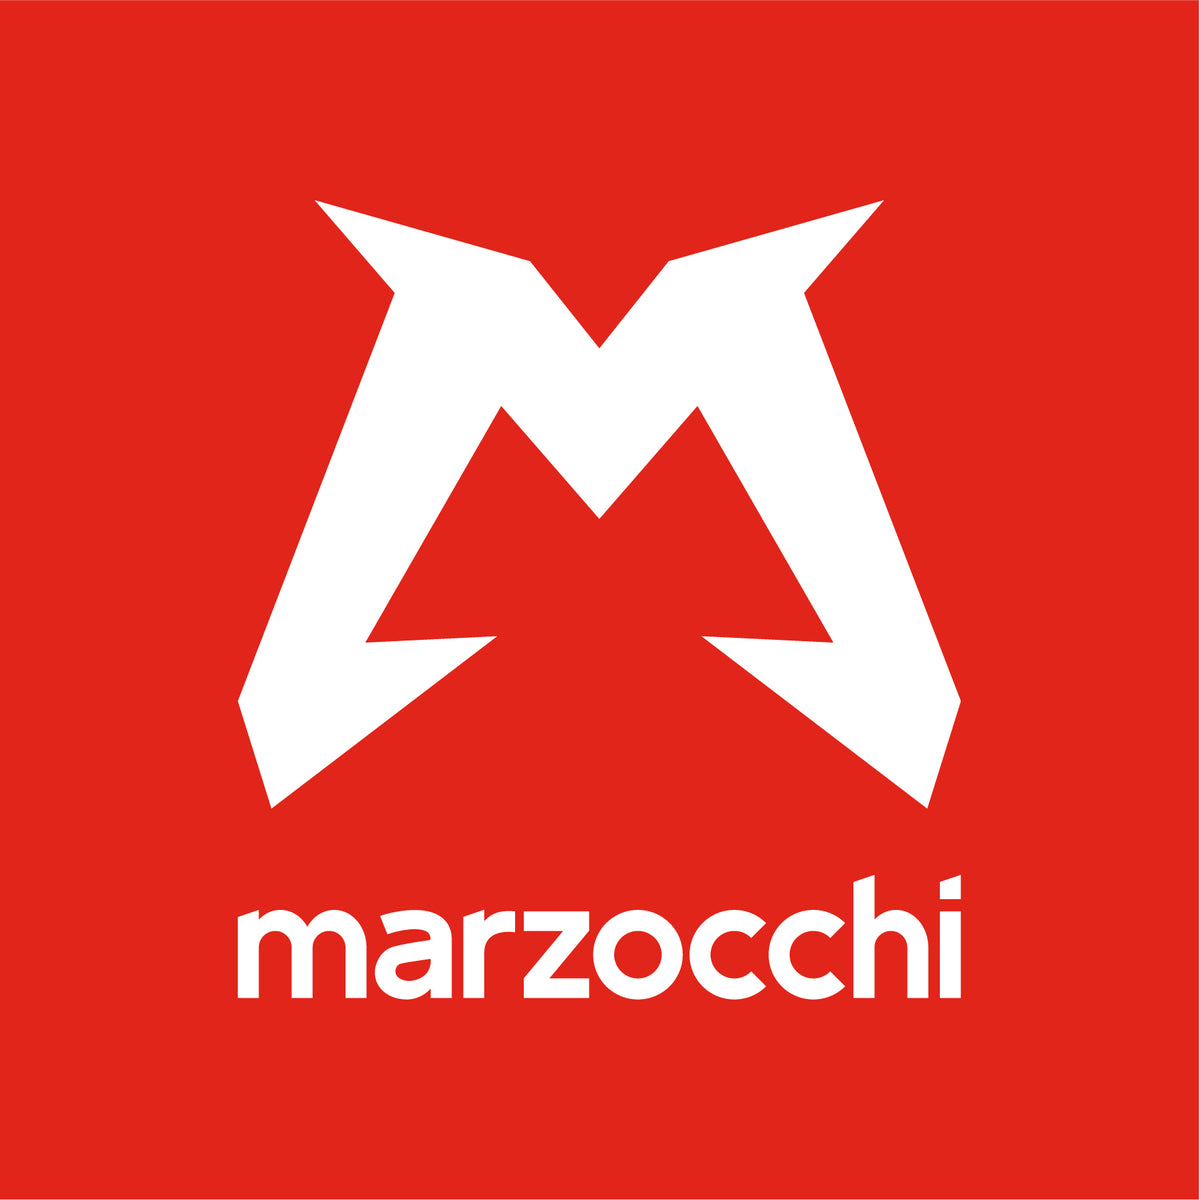 www.marzocchi.com